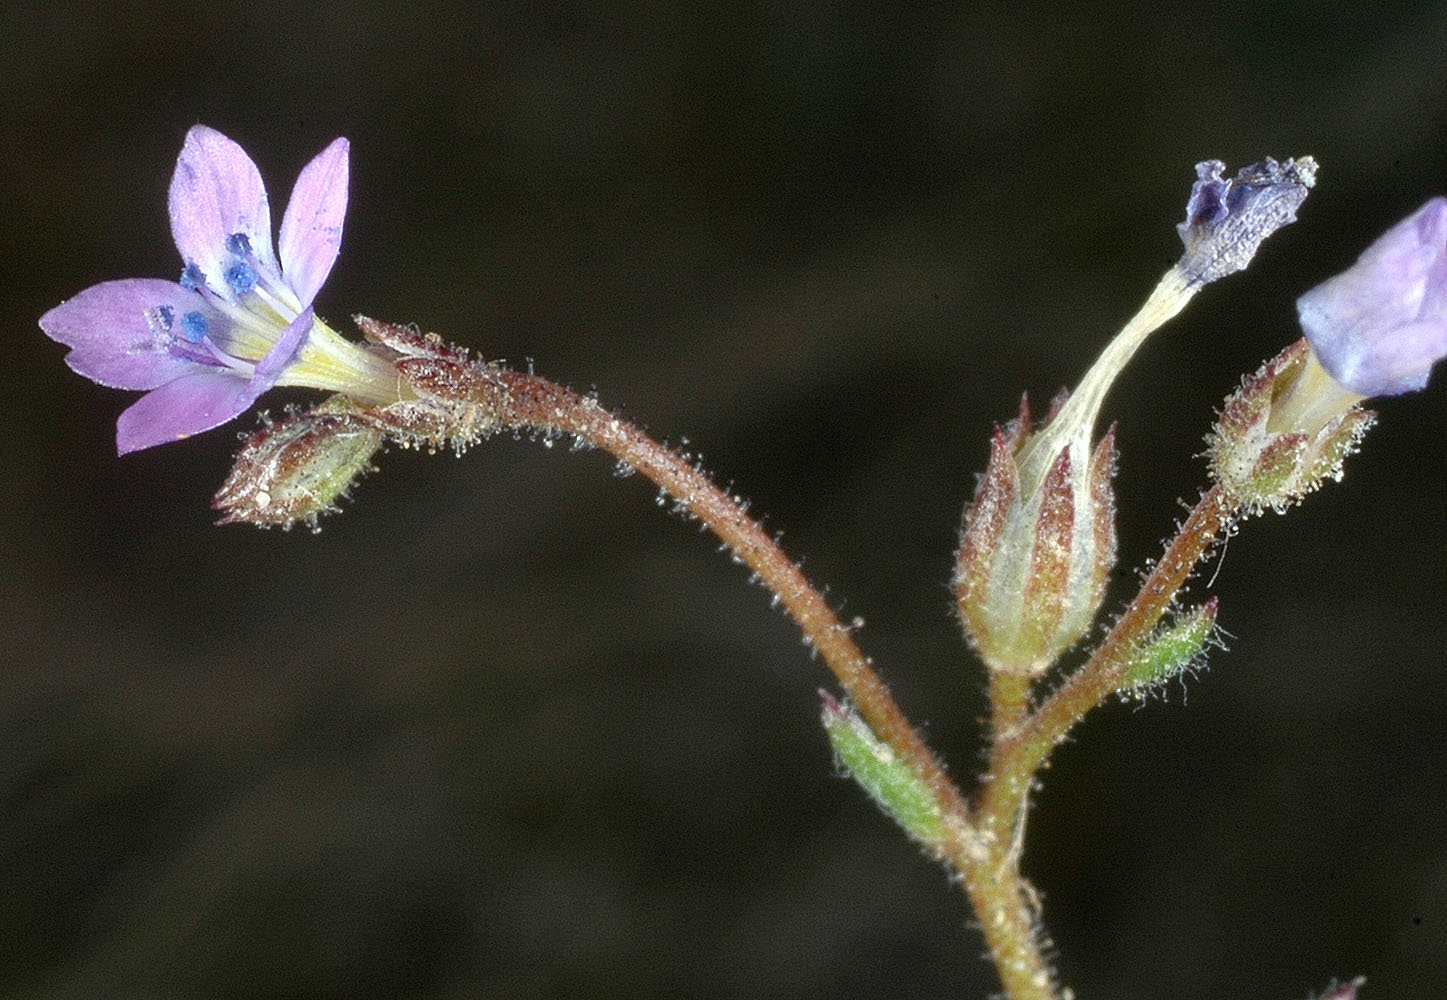 Flora of Eastern Washington Image: Gilia inconspicua